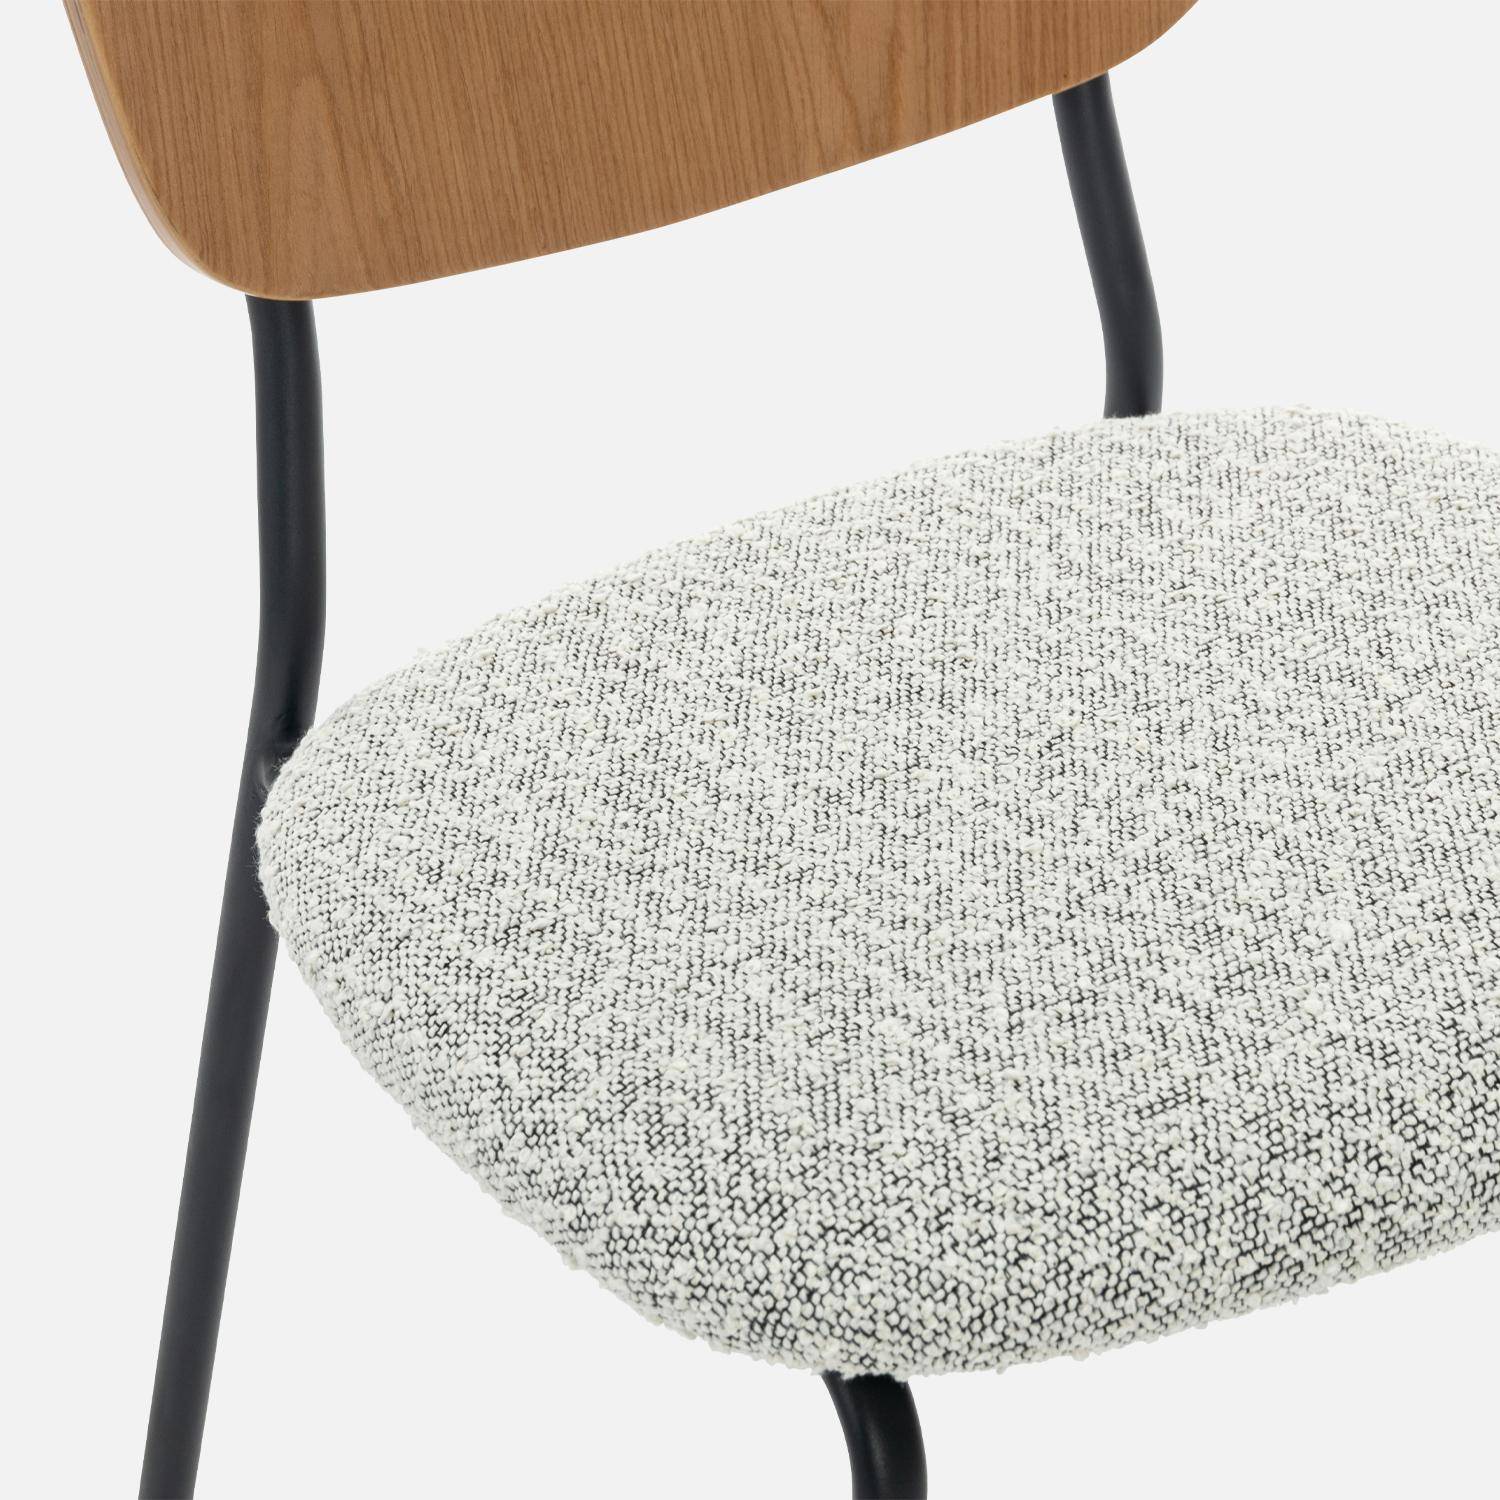 2er Set Stühle mit strukturiertem Bouclé-Sitz in weiß, Rückenlehne aus gewölbtem Pappelholz, Beine aus mattschwarzem Metall,sweeek,Photo4